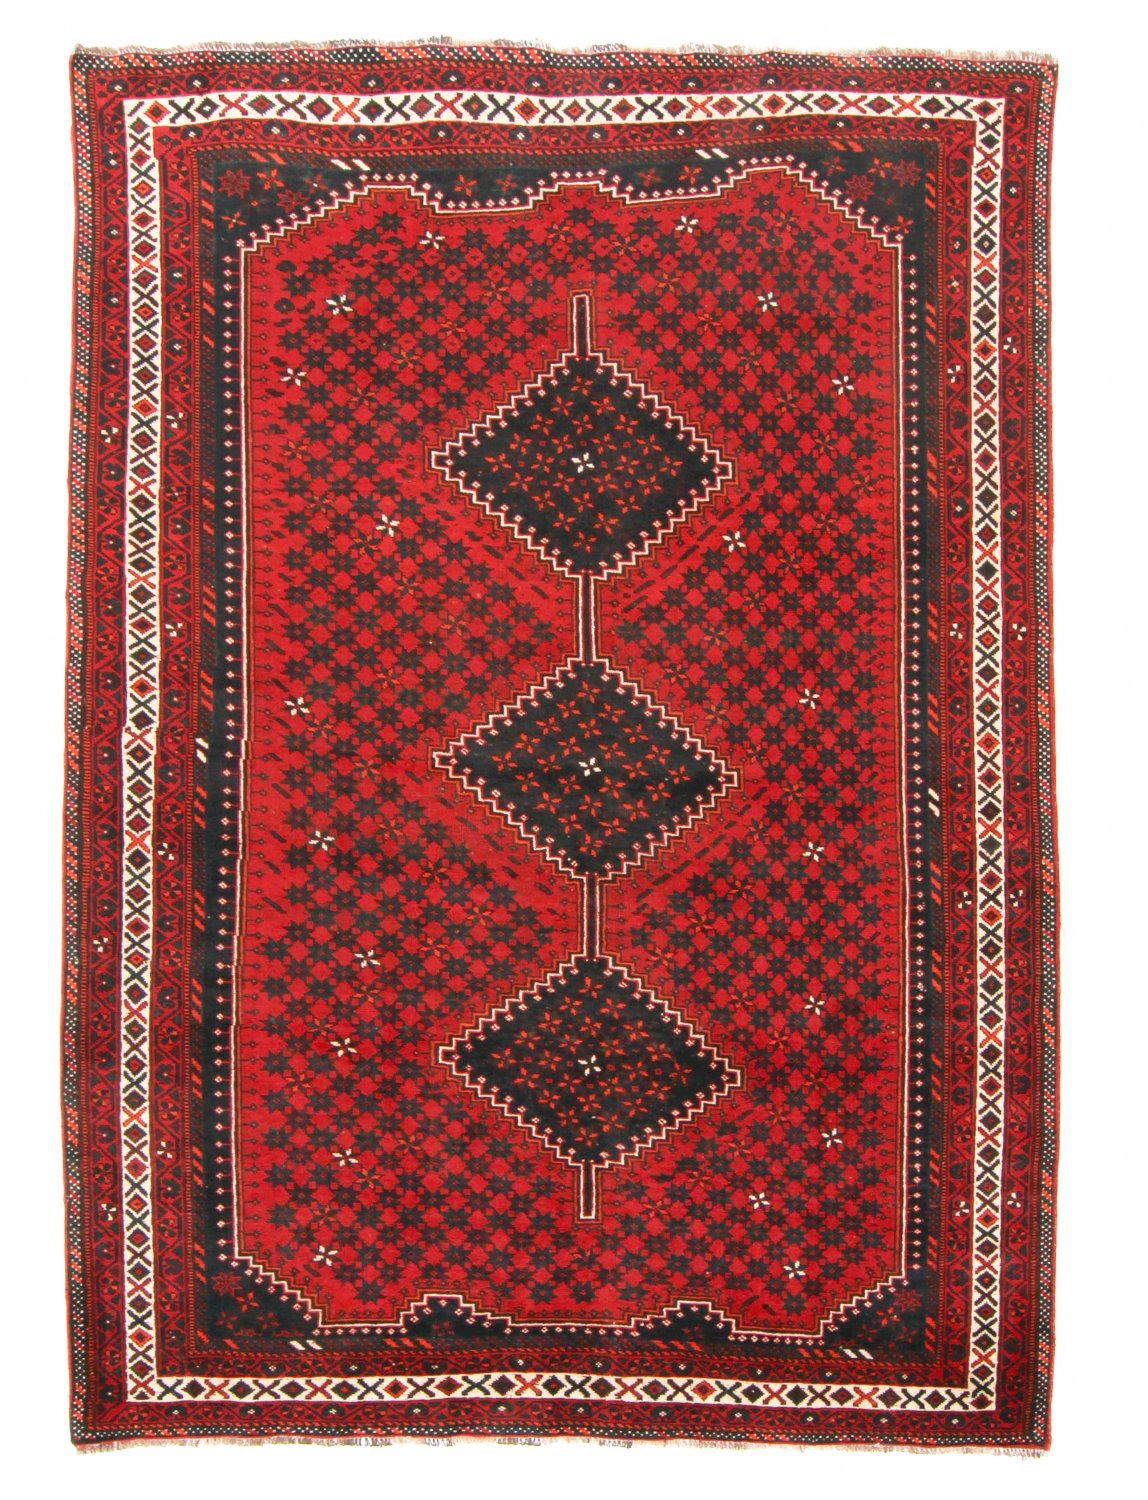 Persian rug Shiraz 299 x 202 cm